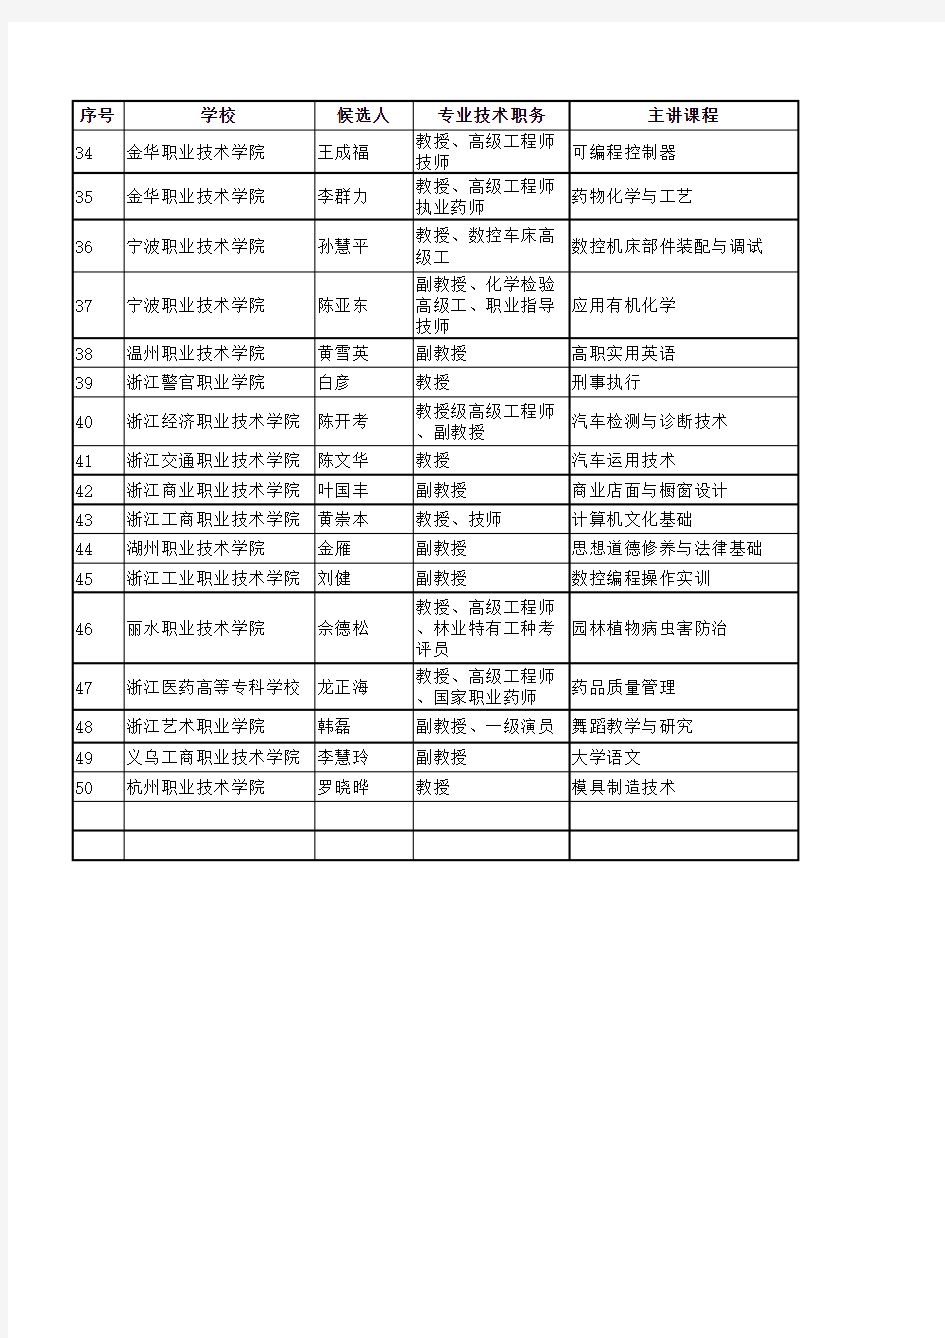 浙江省高等学校第五届教学名师奖获奖人员名单